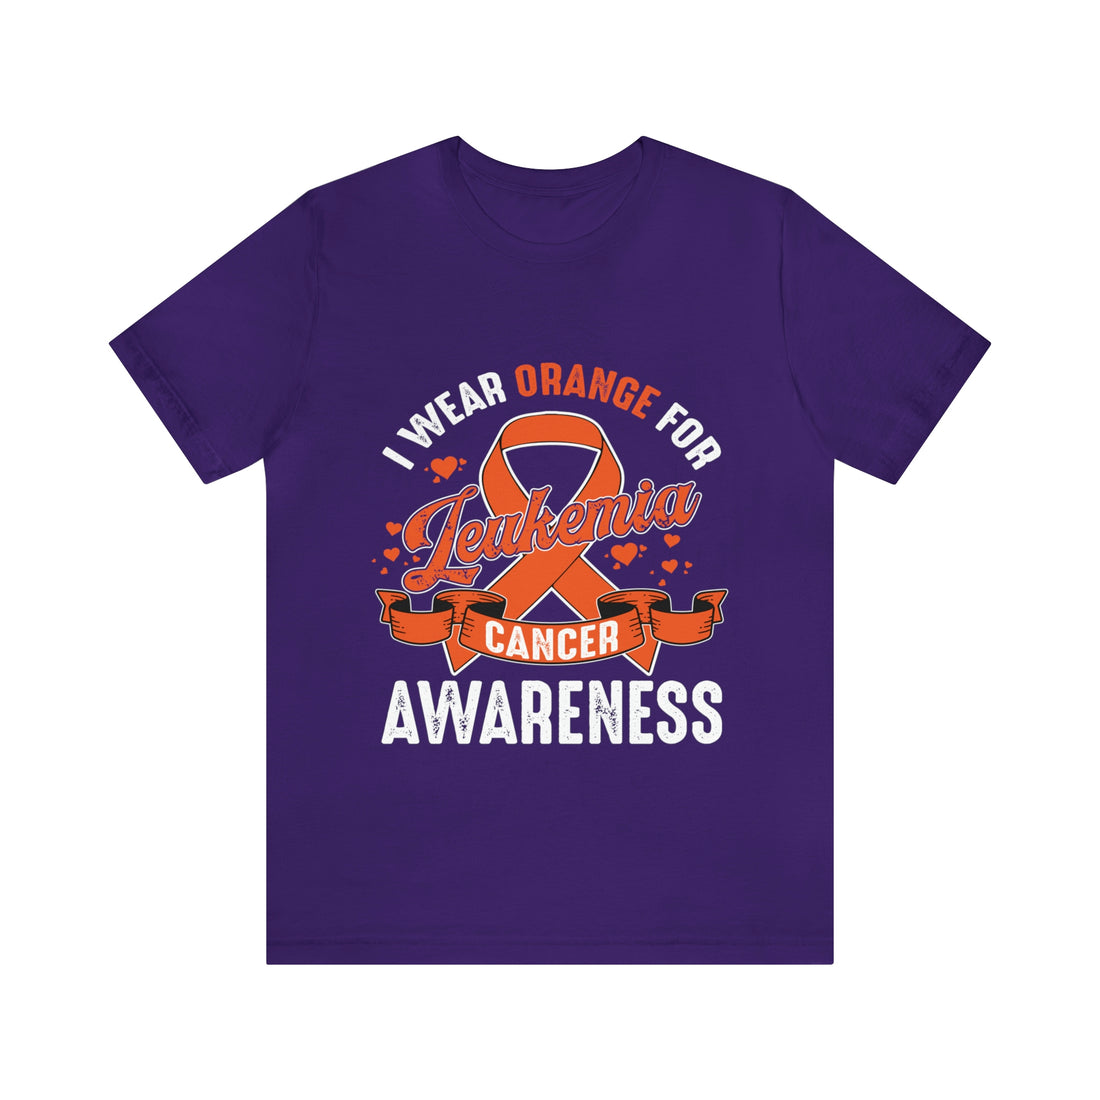 I Wear Orange For Leukemia Cancer Awareness - Unisex Jersey Short Sleeve Tee